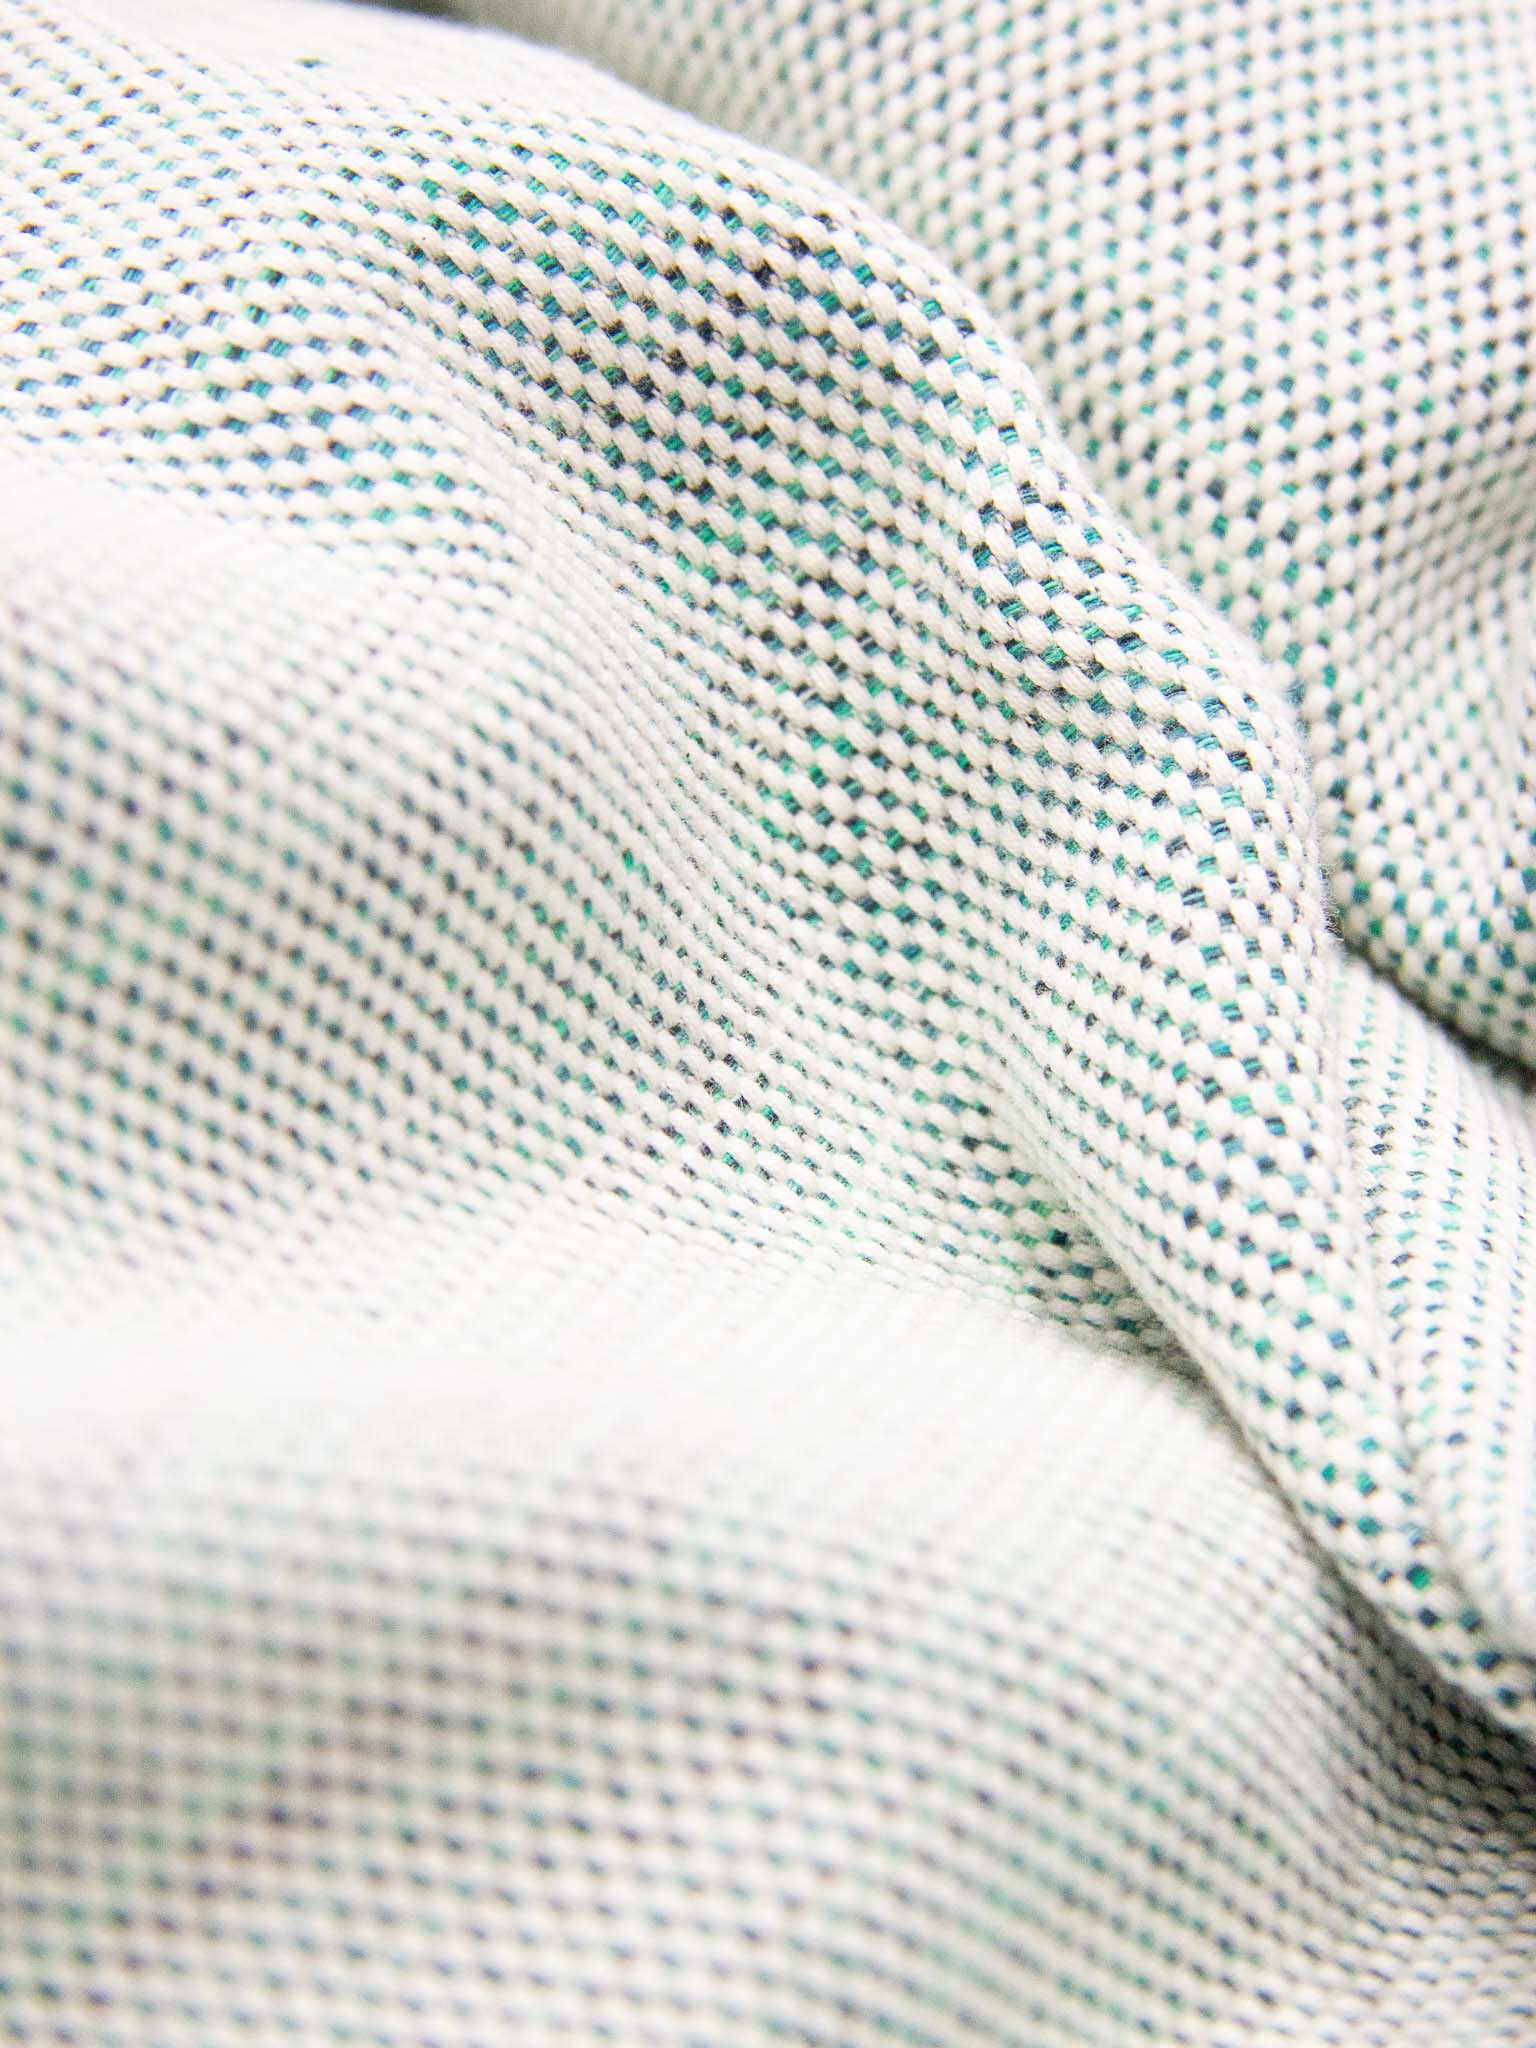 Green patterned lightweight beach towel close up